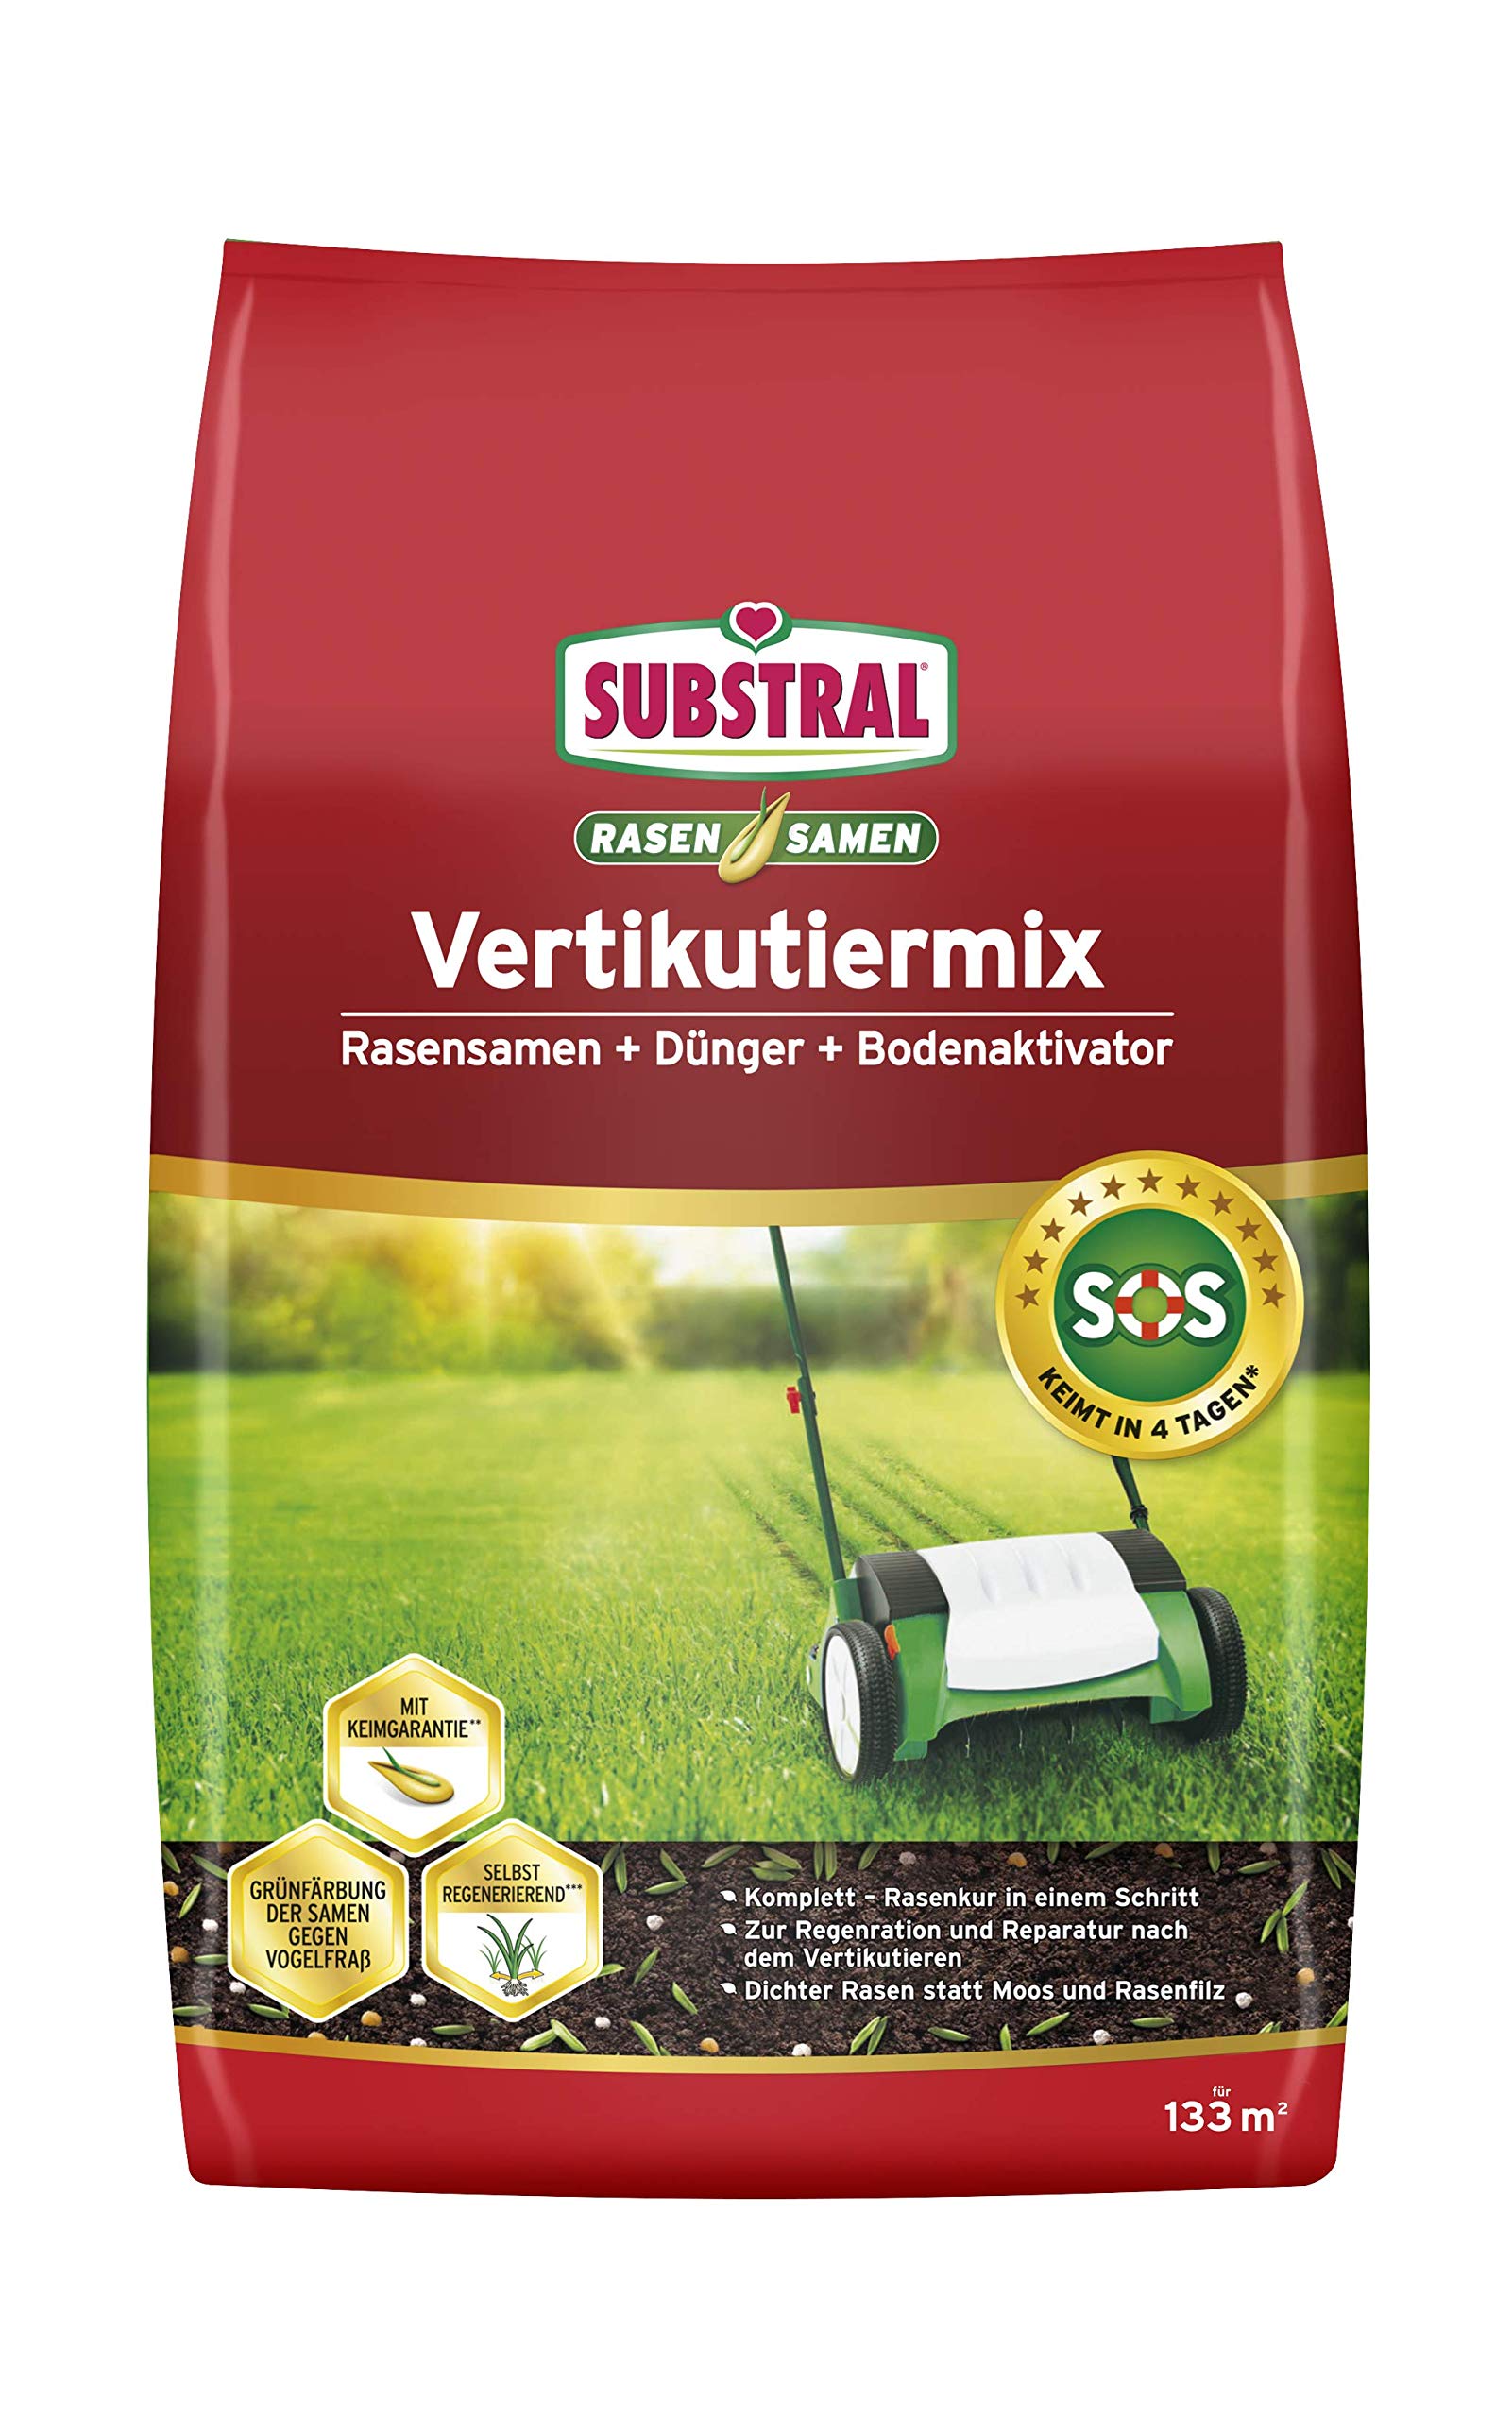 Substral Vertikutiermix Rasenreparatur-Mischung aus Rasensamen, Rasendünger und Bodenaktivator, für 133 m² kg, 4 kg Sack